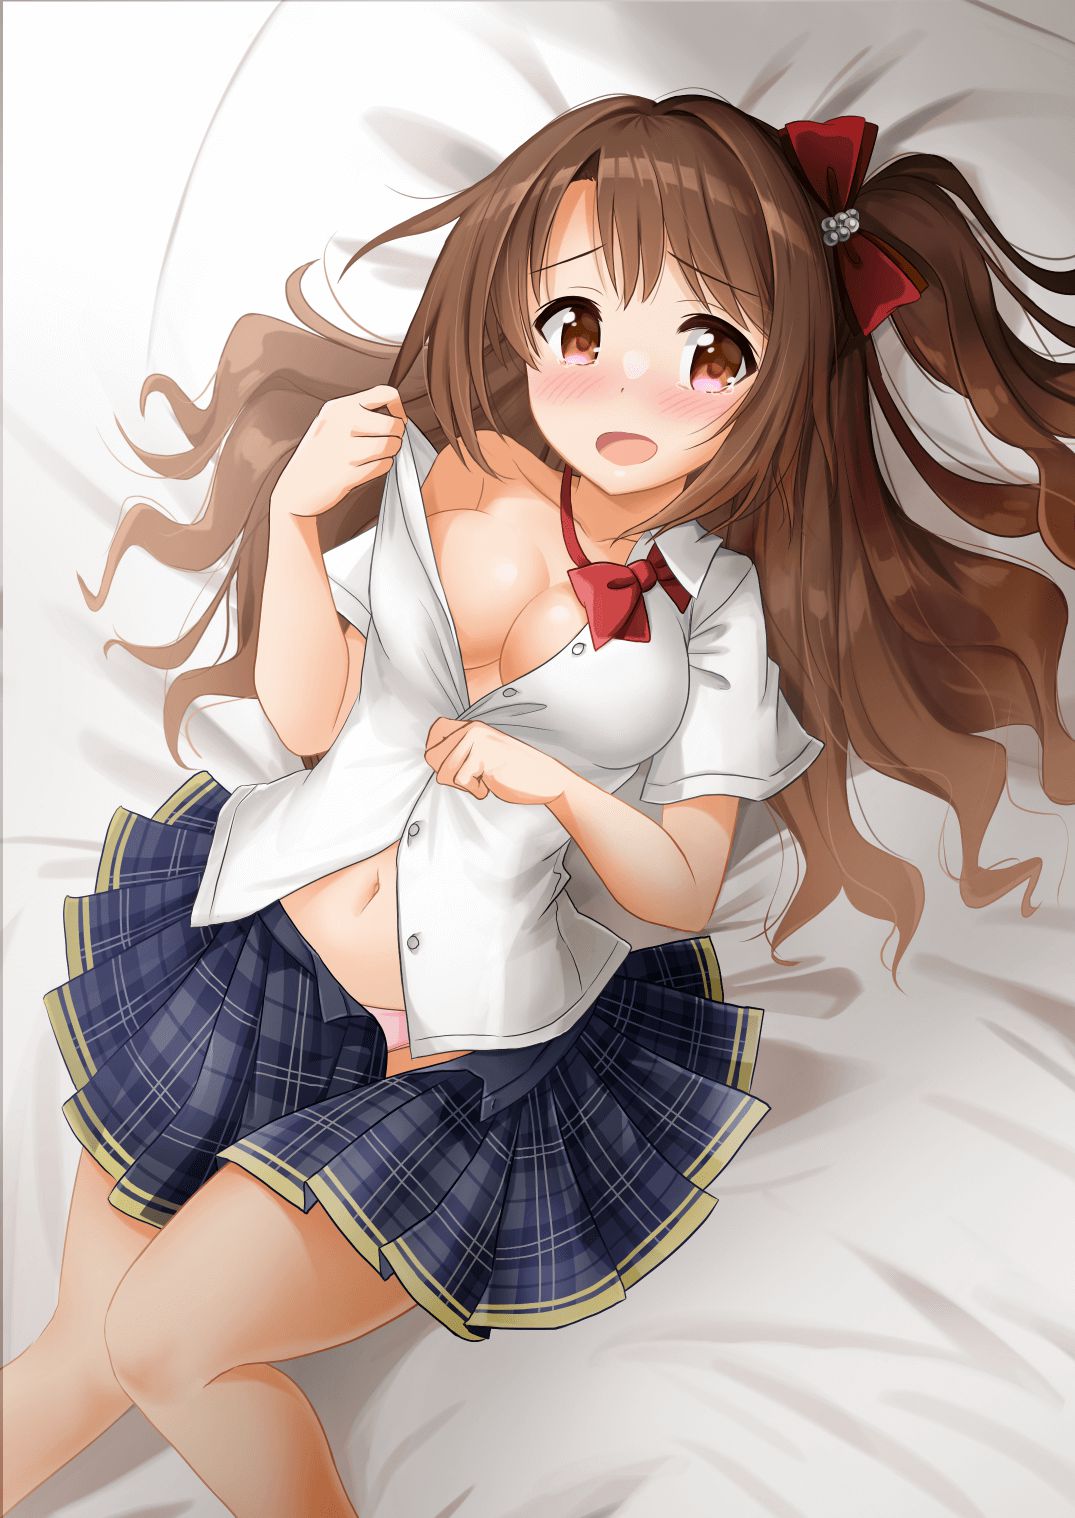 【2D】Erotic cute image of schoolgirl wearing school uniform (blazer sailor) 32